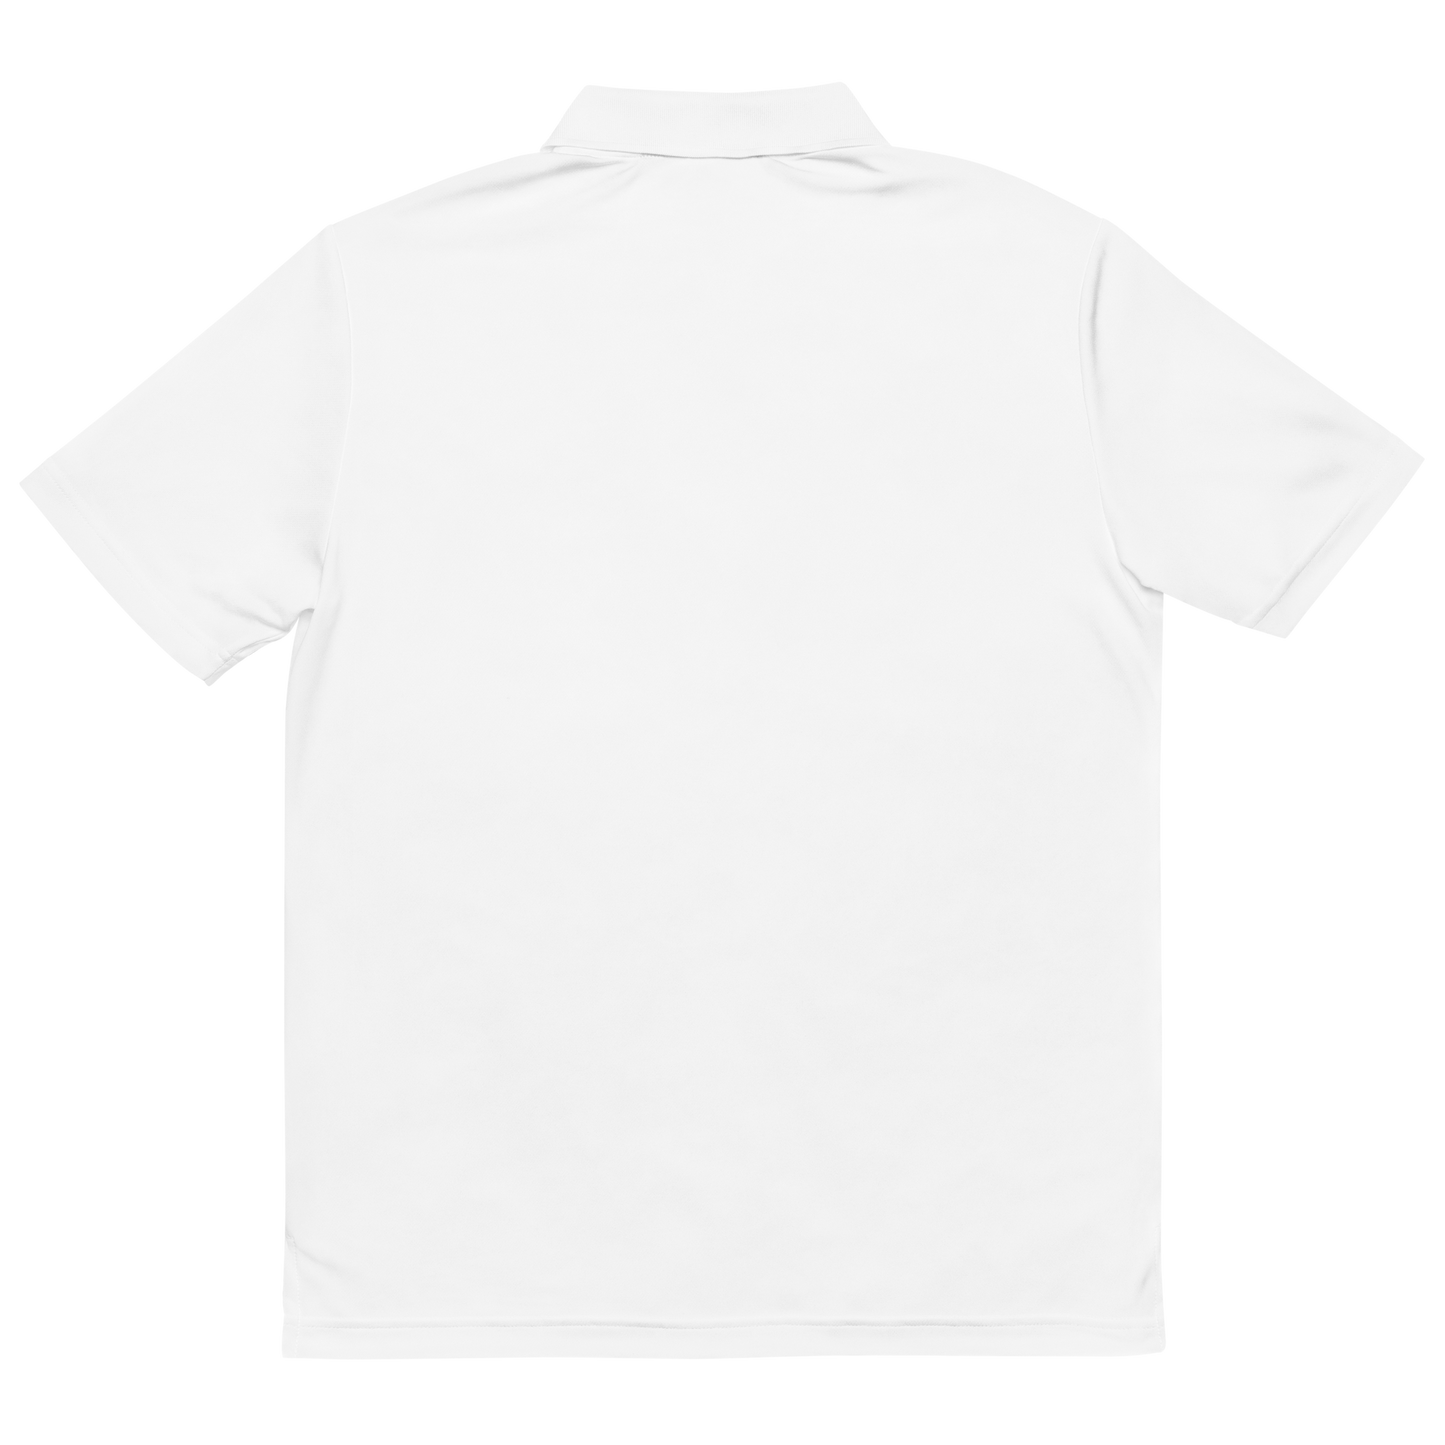 Adidas X HUM Essentials Performance Polo Shirt - White